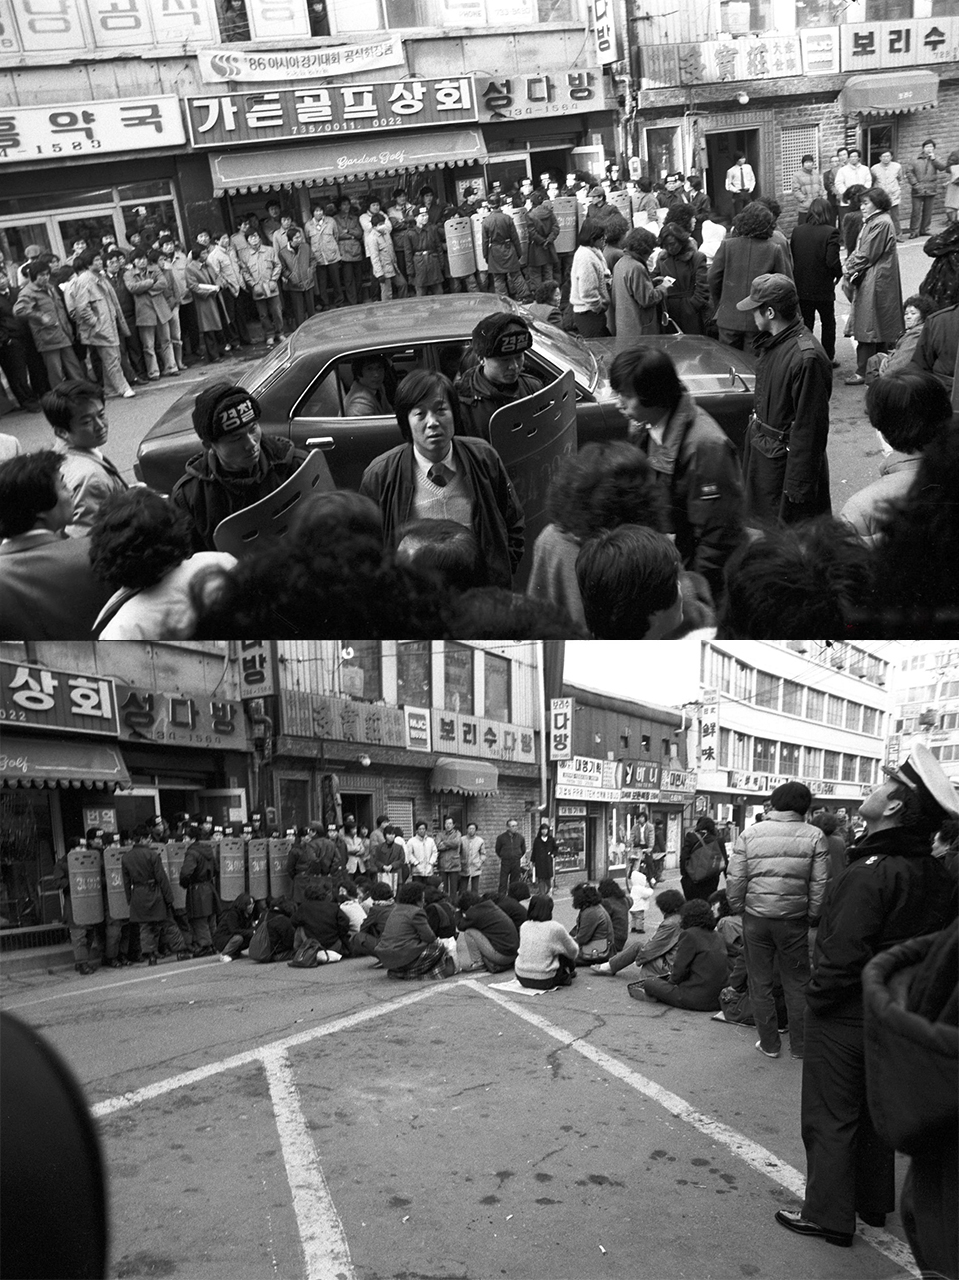 1985년 12월 18일 민가협 현판식을 막아서는 경찰(위)과 사무실이 있는 거리 앞에서 농성중인 민가협 회원들(아래)